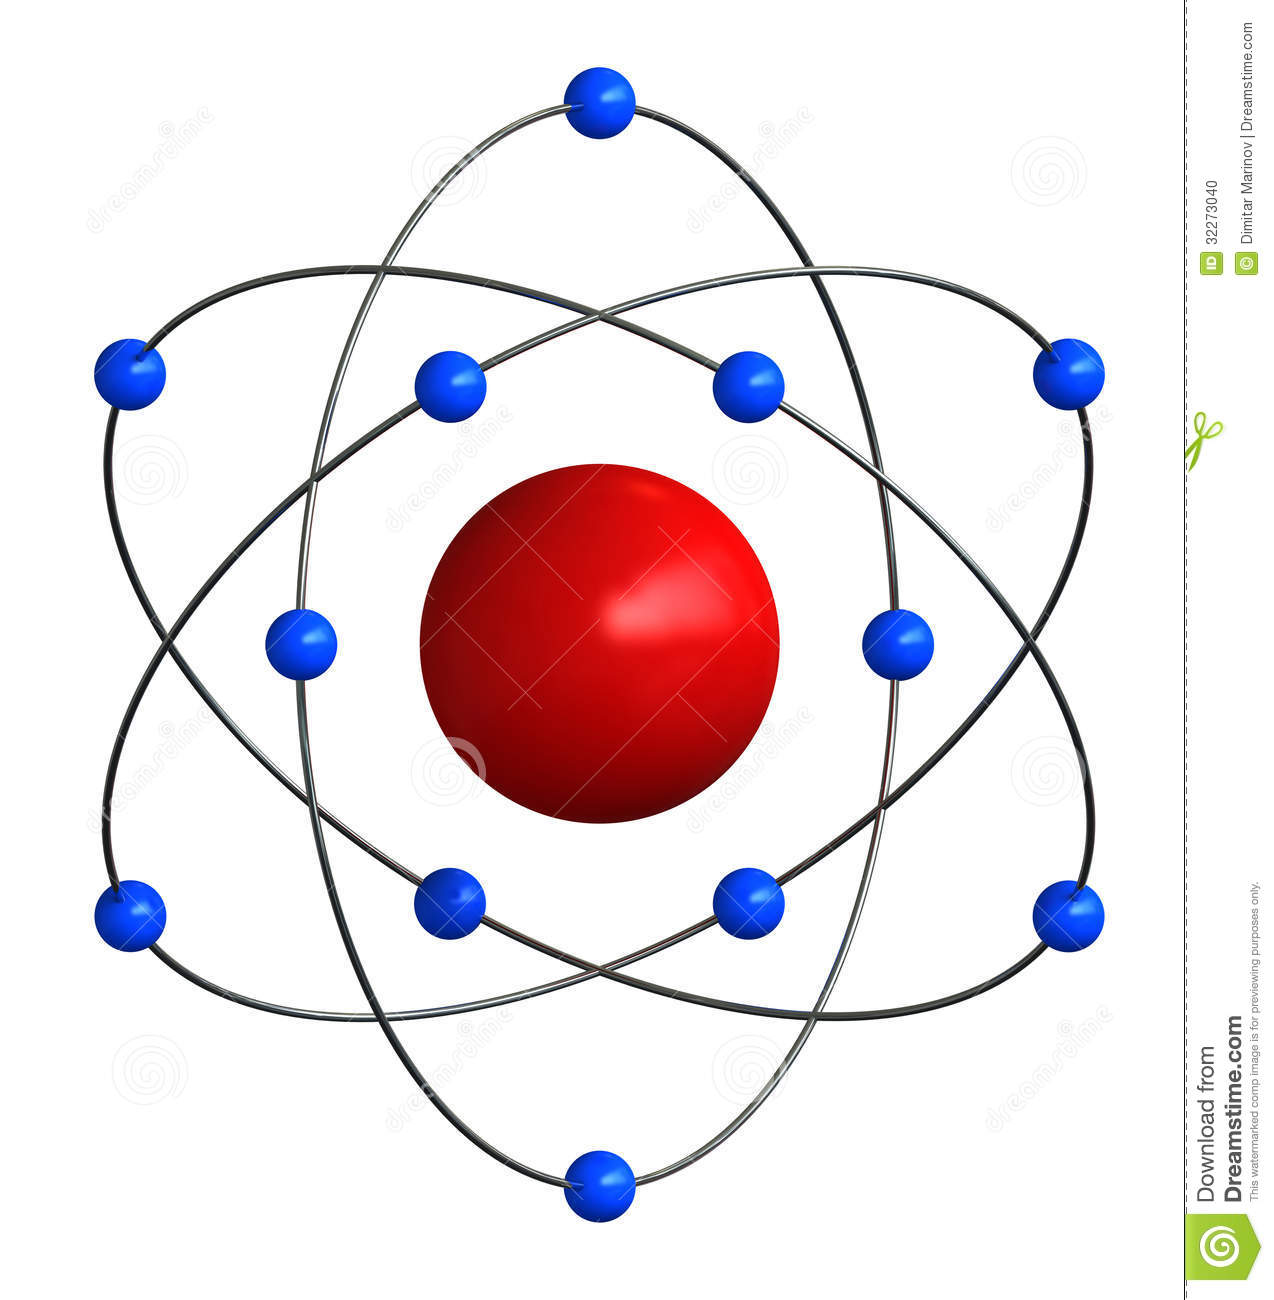 Estructura atomica